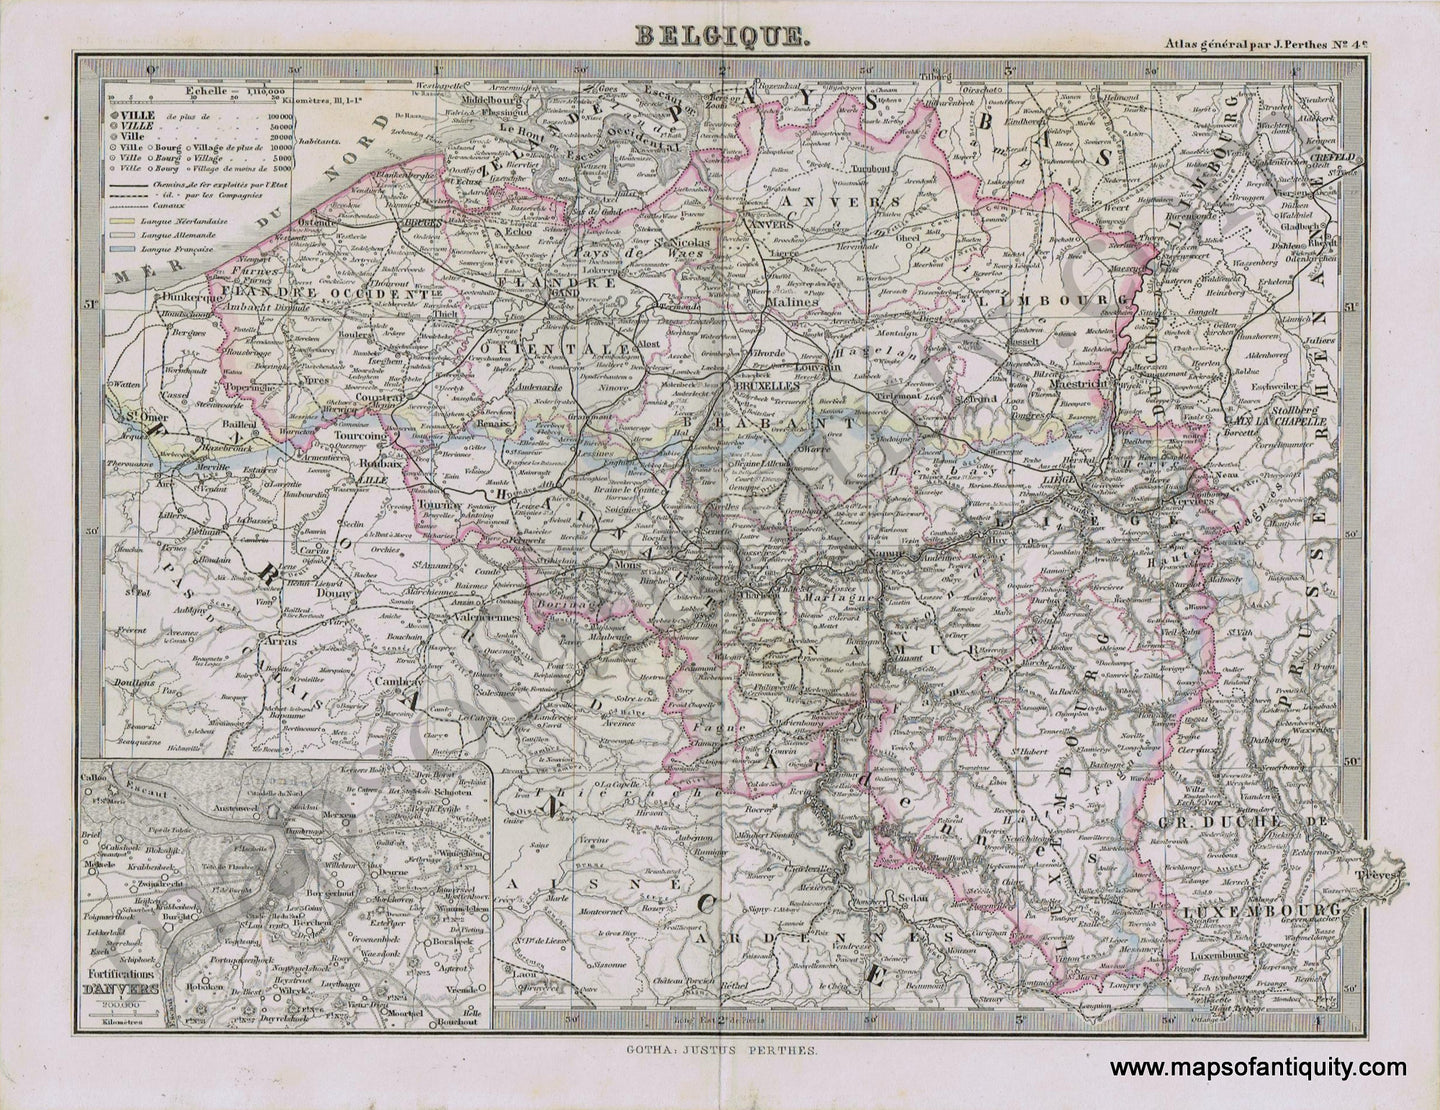 Belgium-Belgique-Perthes-1871-Antique-Map-1870s-1800s-19th-century-Maps-of-Antiquity